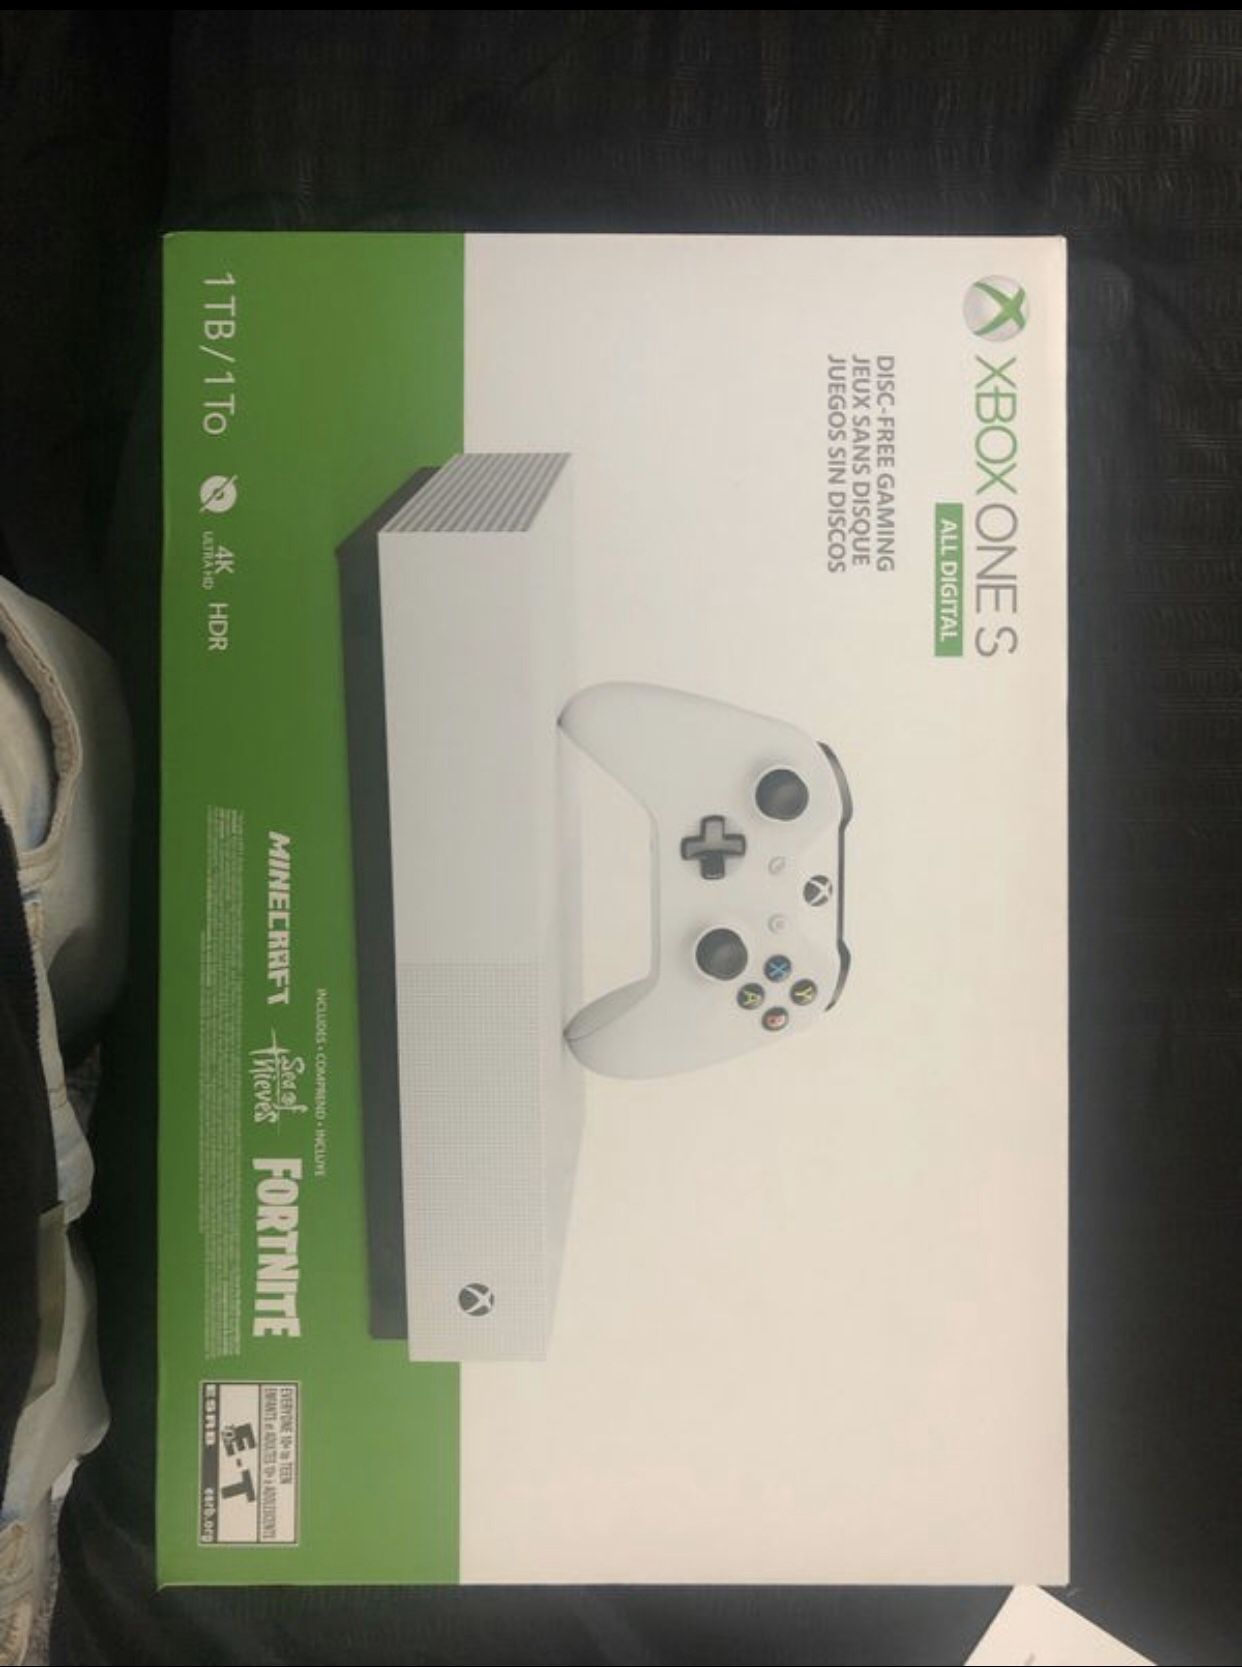 New Xbox One S